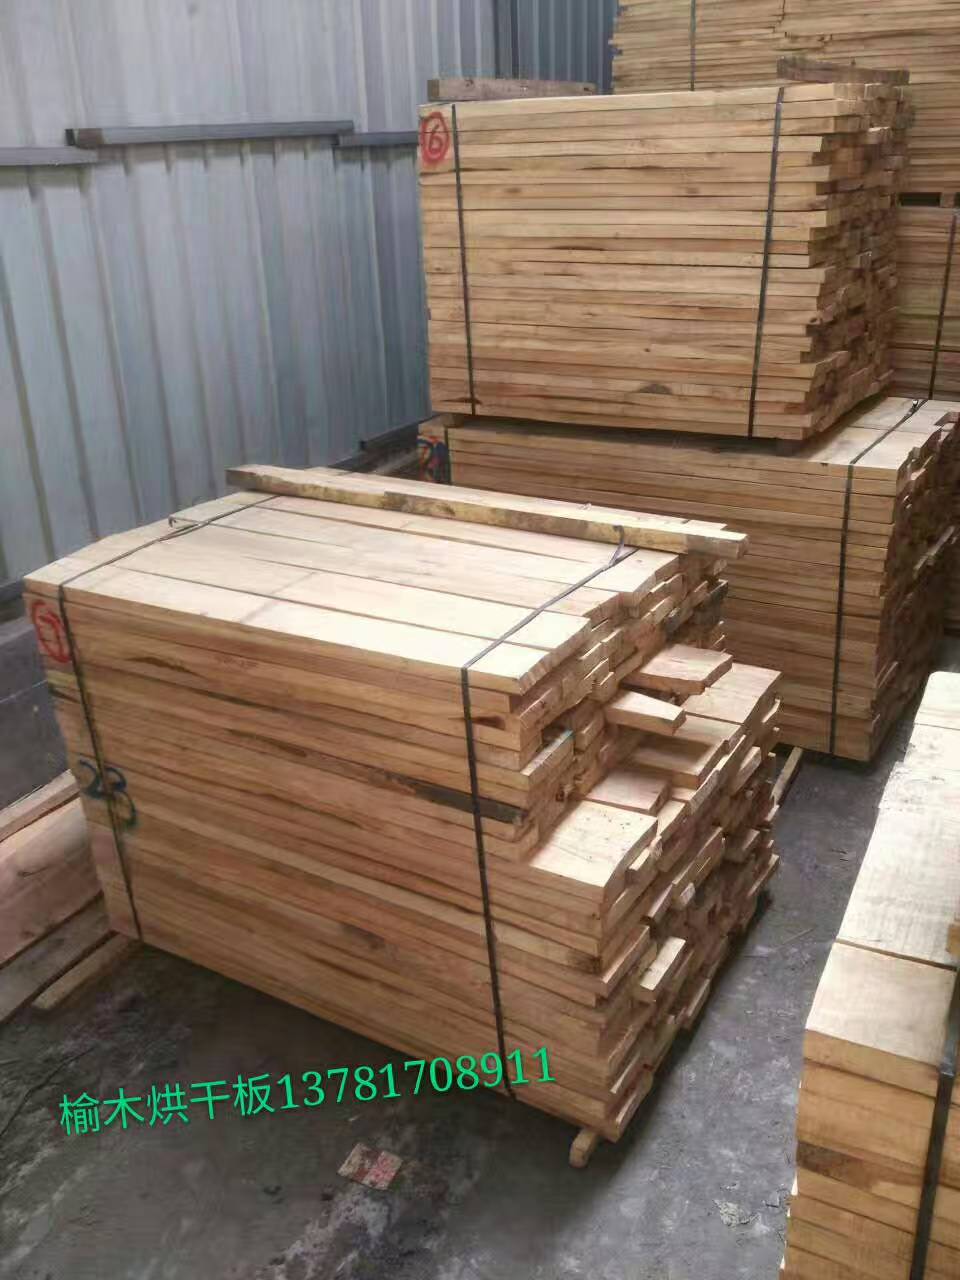 榆木家具板材 加工榆木板材 河南建淼木材加工厂 榆木烘干板材 厂家5